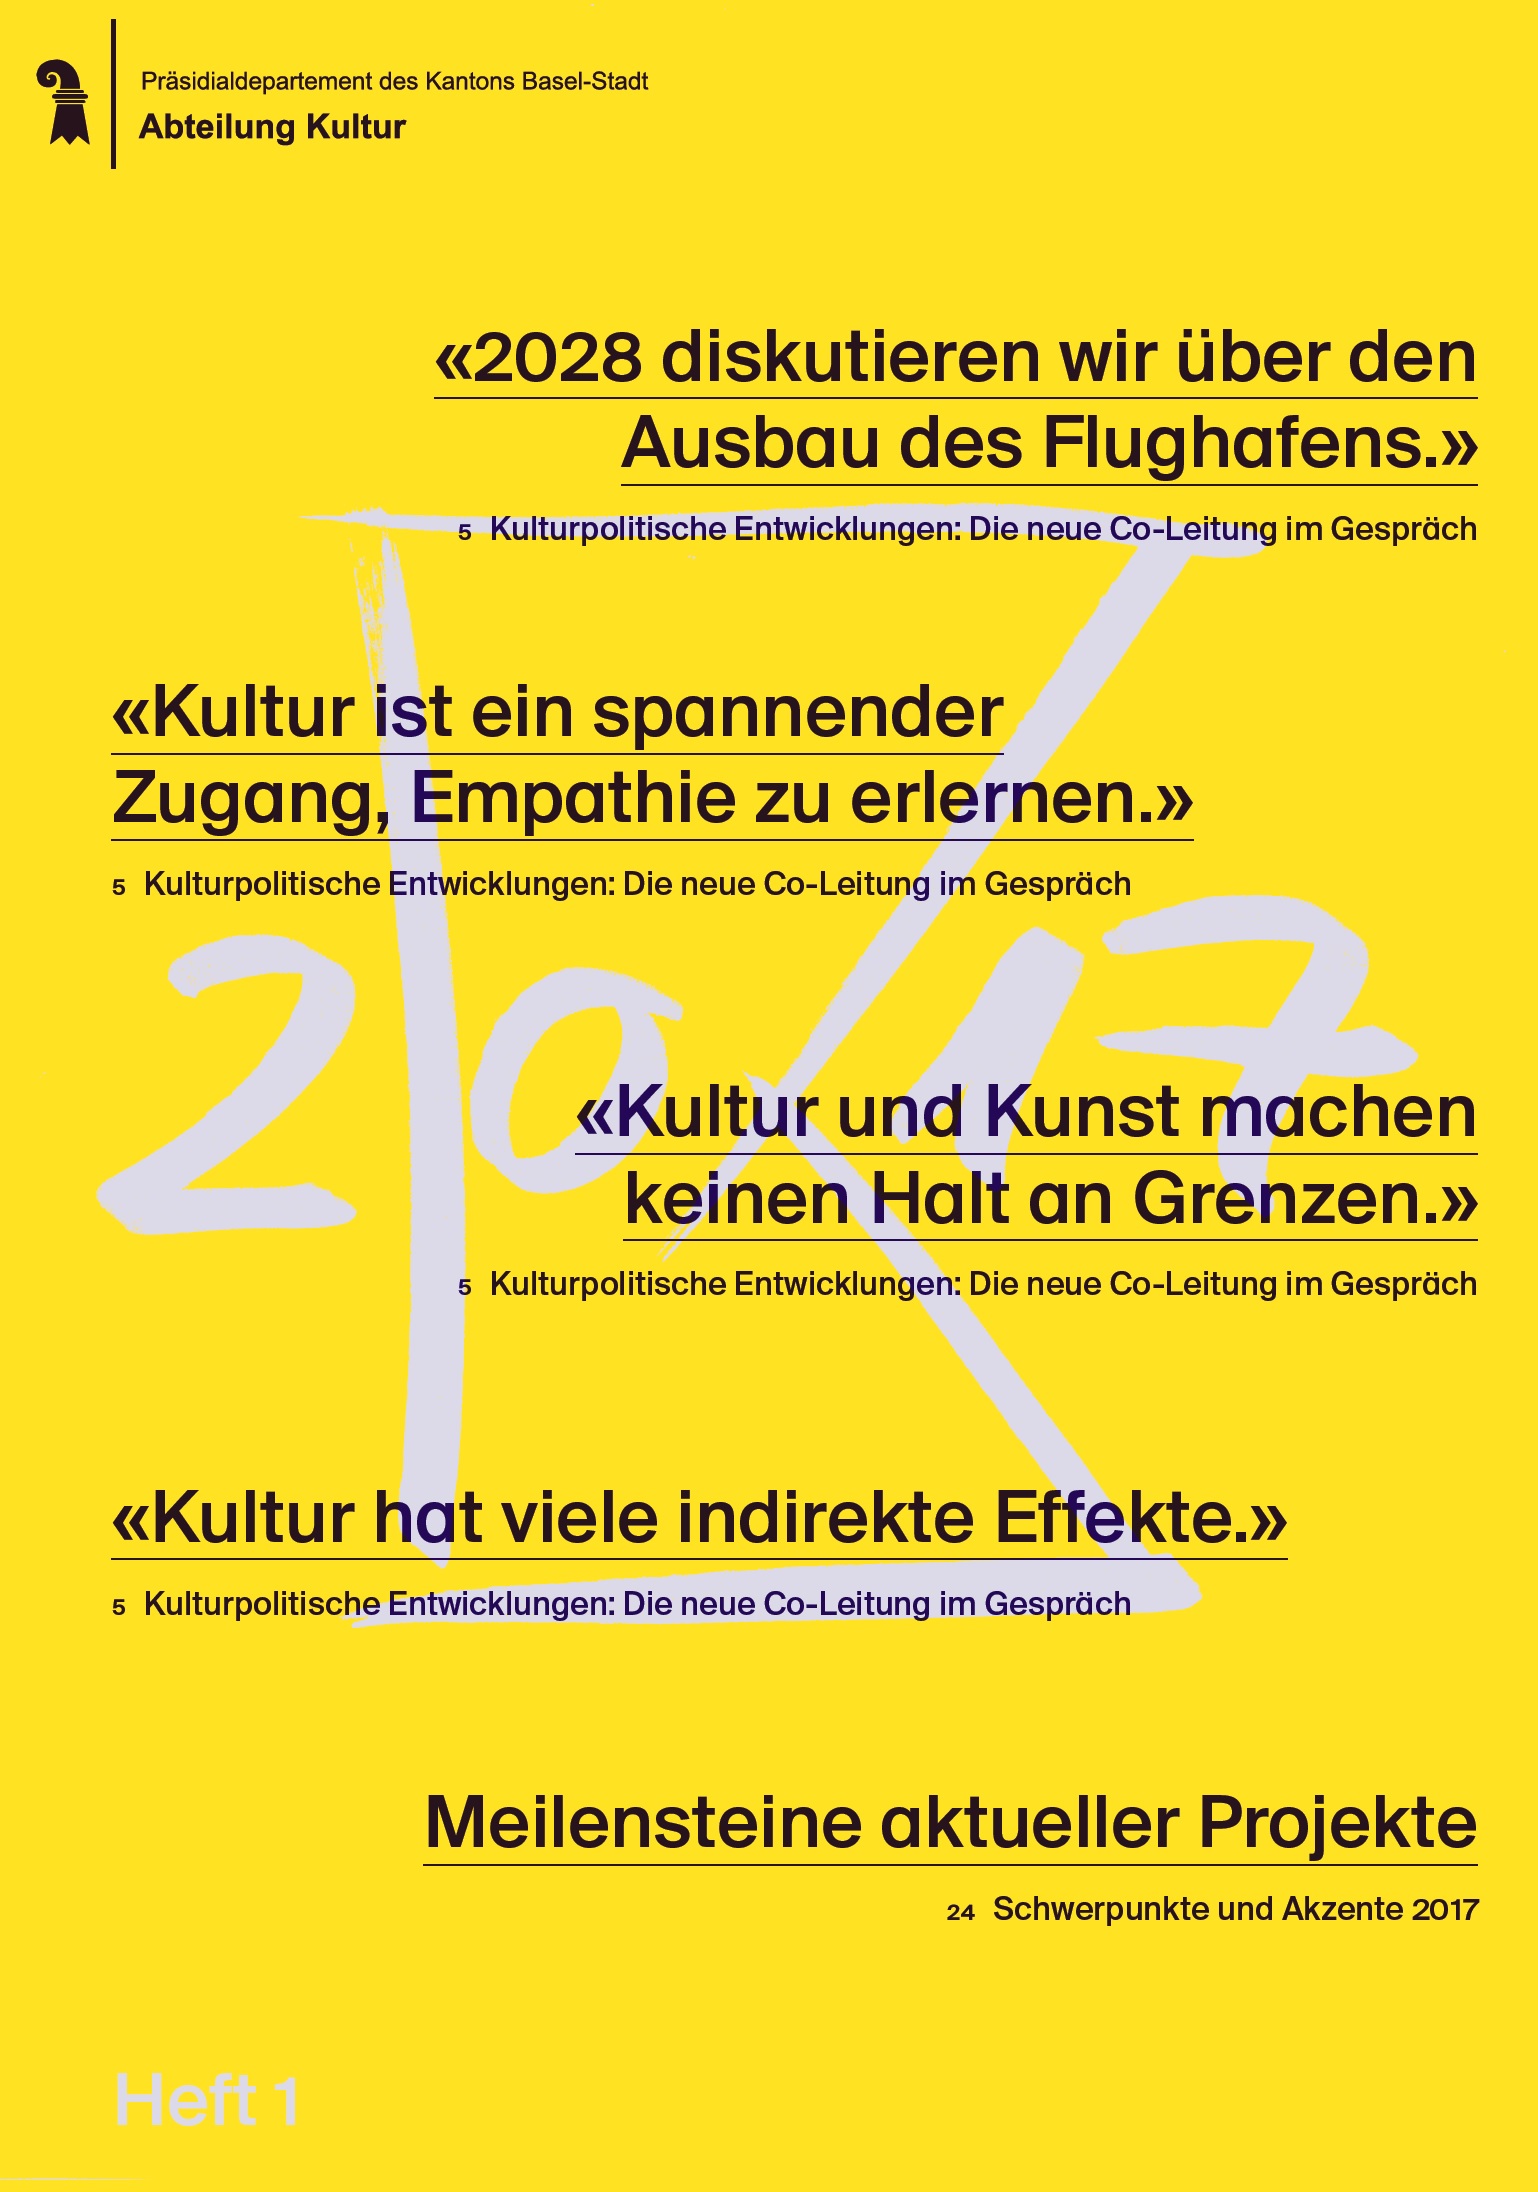 Jahresbericht 2017 der Abteilung Kultur Basel-Stadt